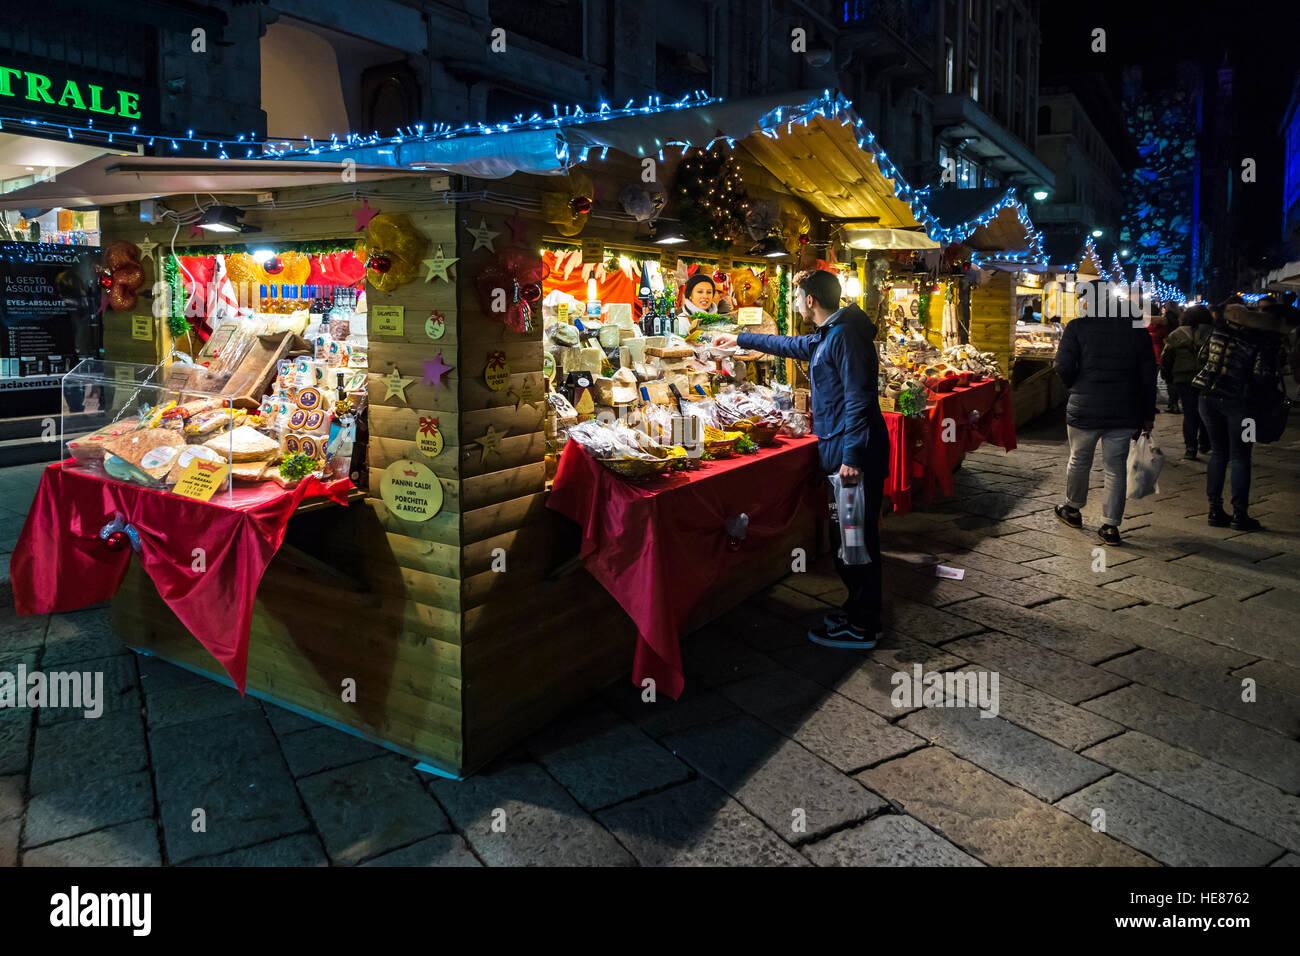 Avec les kiosques de la nourriture locale et des cadeaux en annuelles traditionnelles de Noël sur la place Cavour dans le centre de la vieille ville de Côme, Italie Banque D'Images